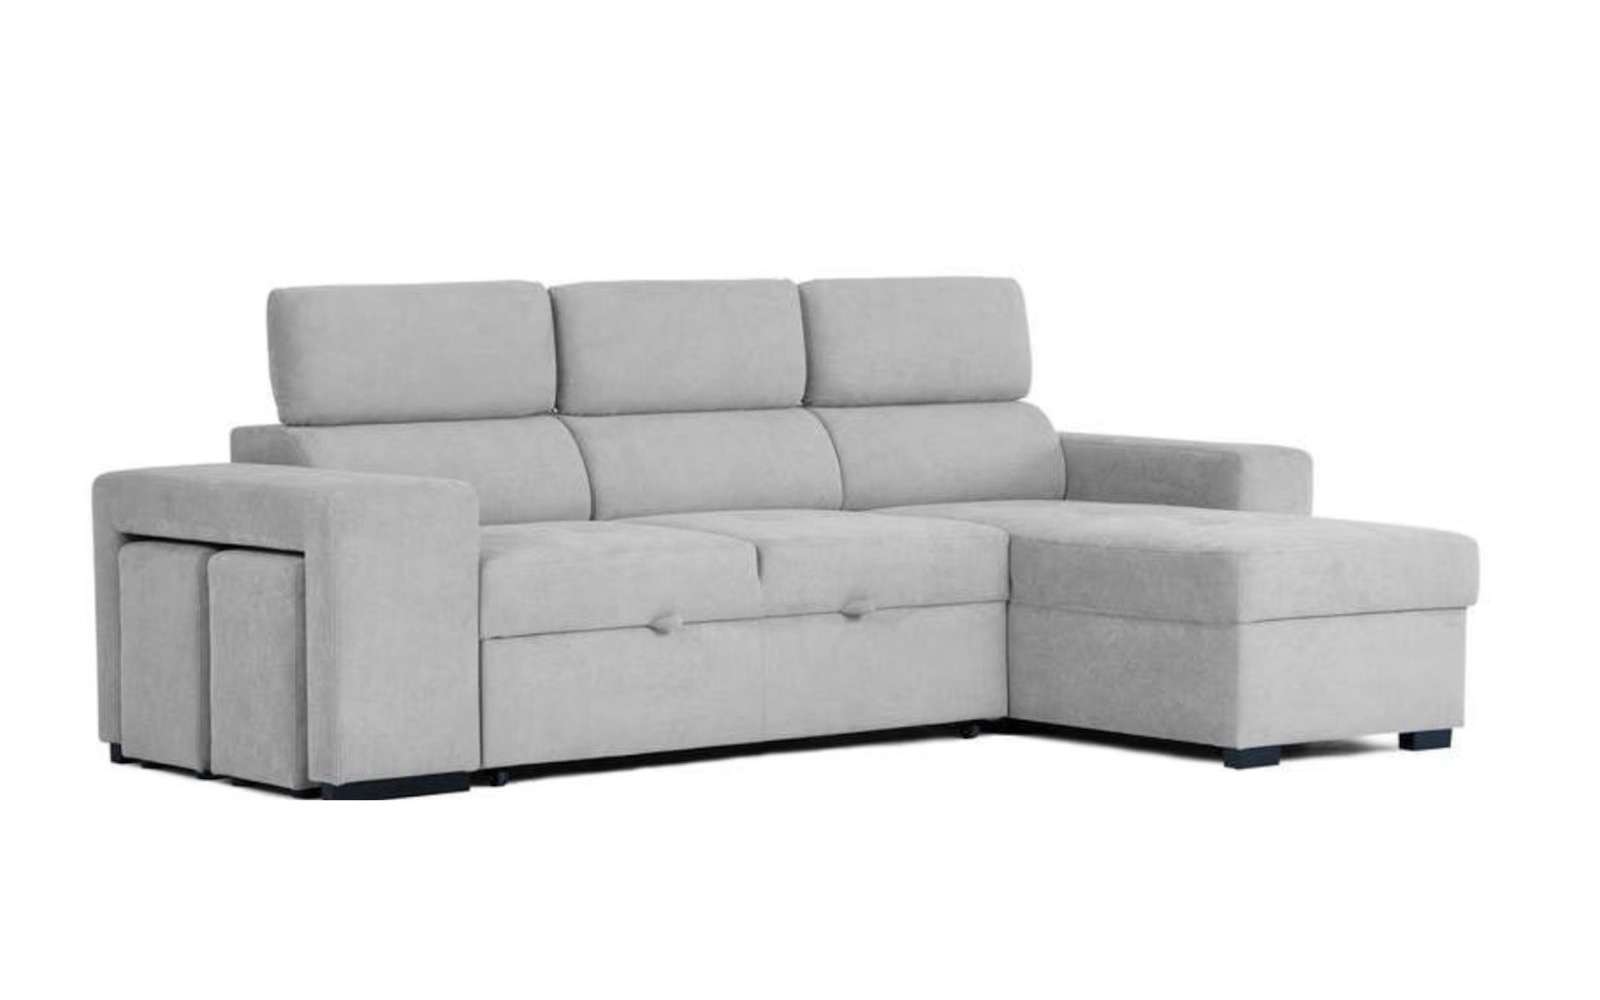 Découvrez l'offre Conforama sur ce canapé d'angle moderne et pratique. (Source : Conforama)